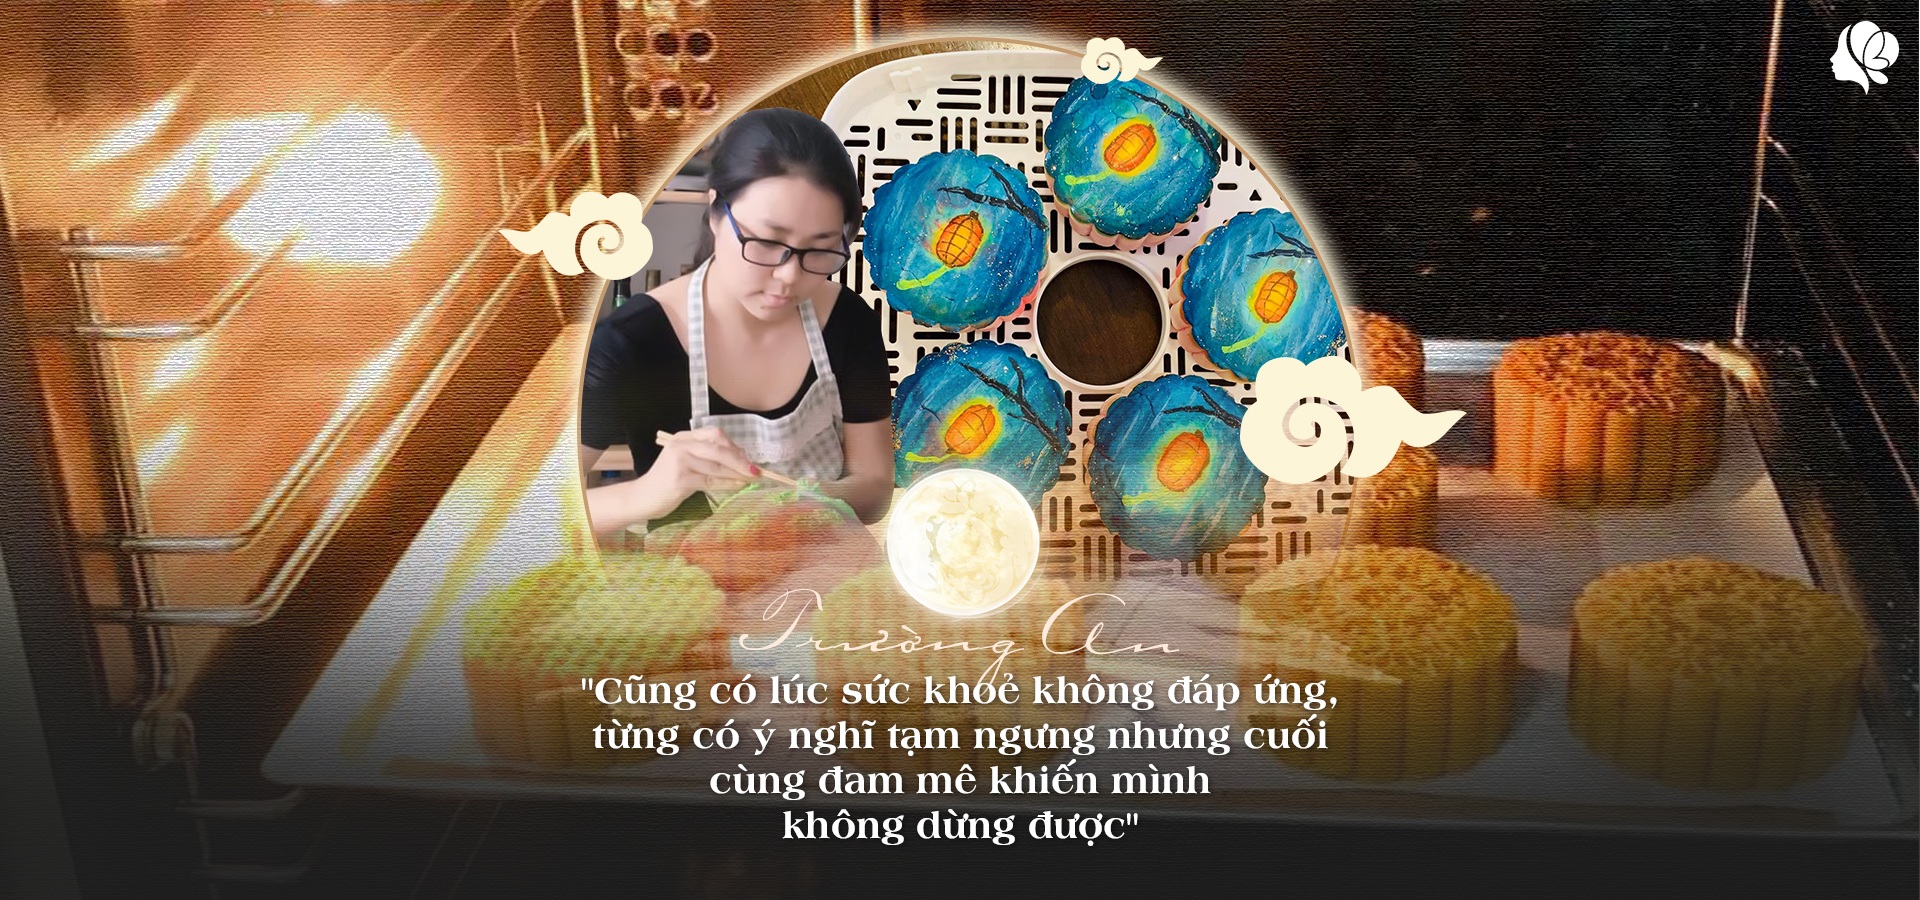 Bỏ việc ở nhà làm bánh, tạo ra bánh Trung thu vẽ tay, 8X Sài Gòn kiếm 60 triệu/tháng - 6